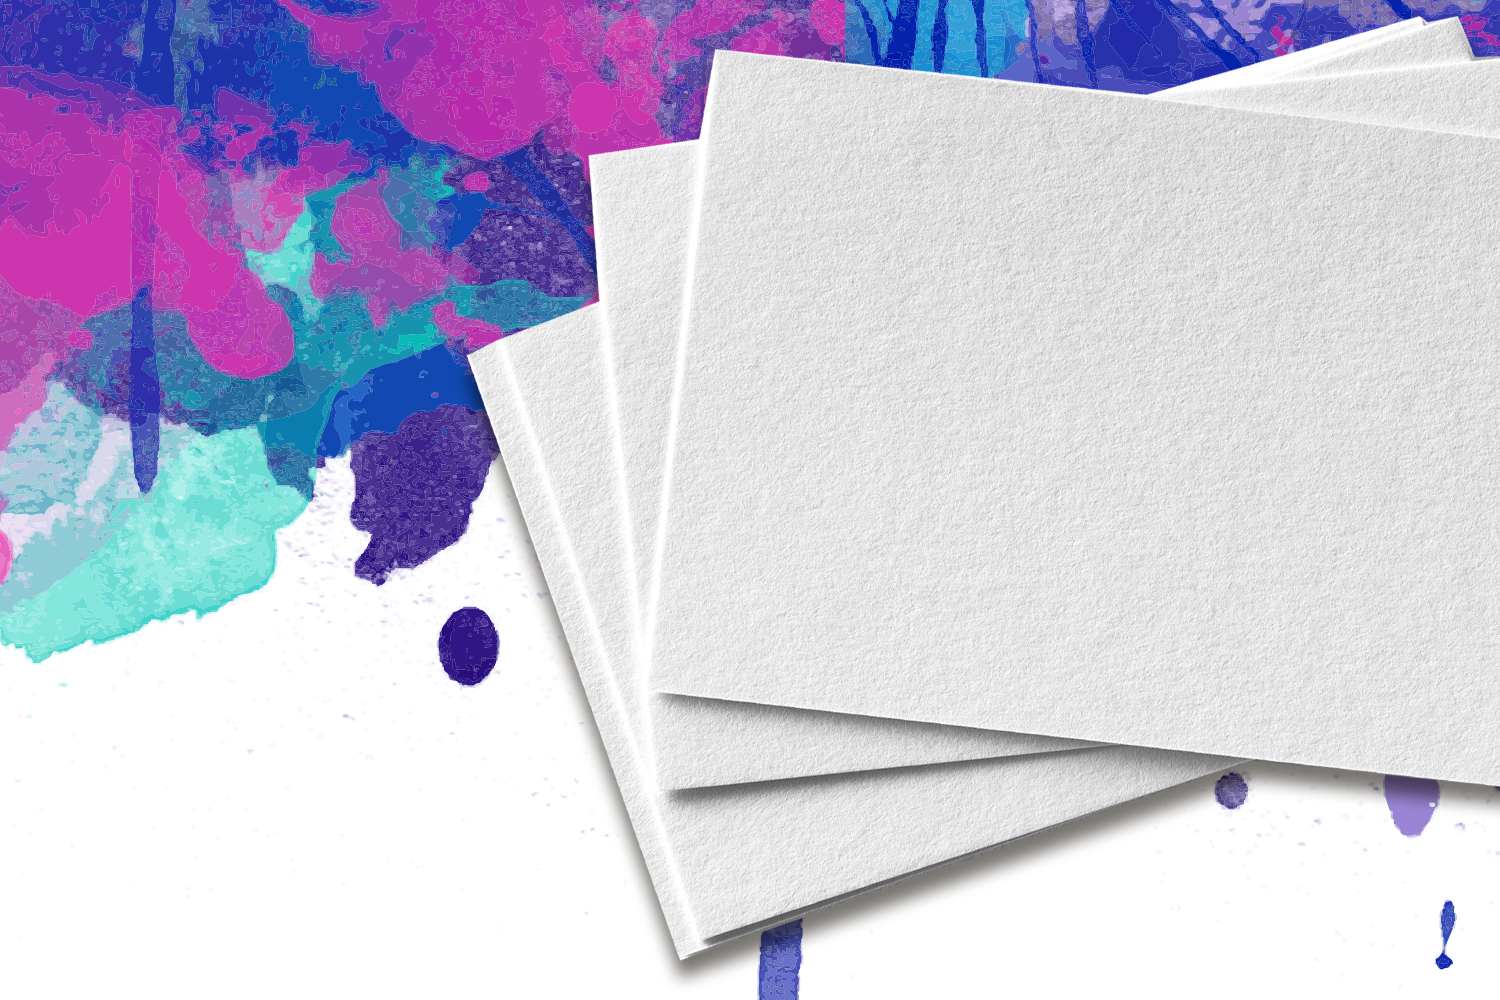 Papier carton, blanc, 21 x 29,7 cm, 50 feuilles  acheter en ligne sur  buttinette - loisirs créatifs